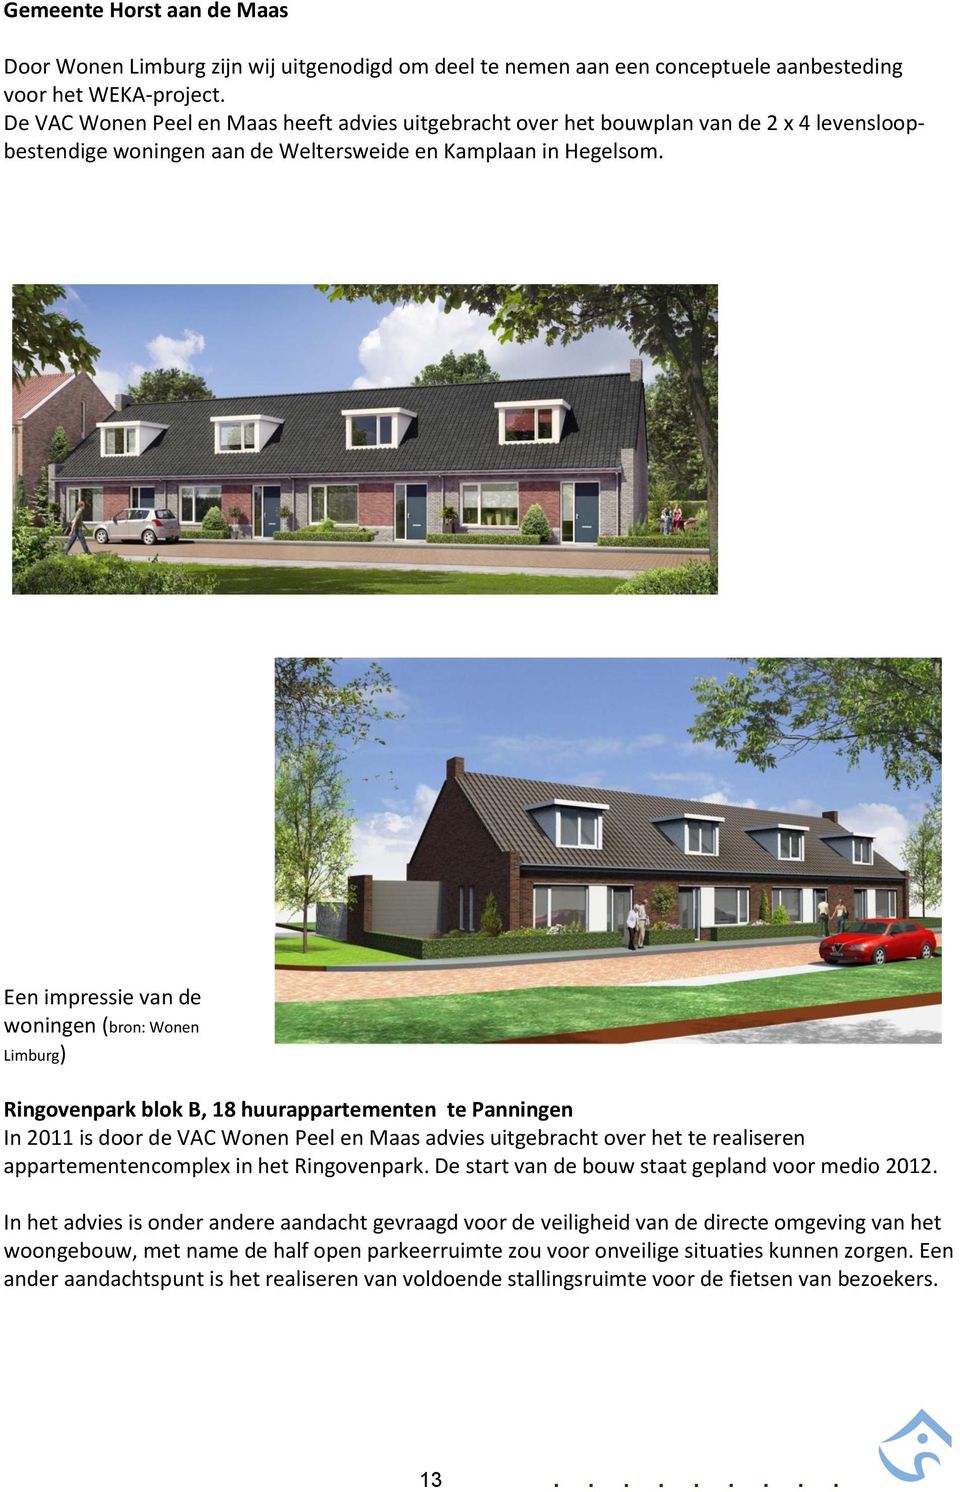 Een impressie van de woningen (bron: Wonen Limburg) Ringovenpark blok B, 18 huurappartementen te Panningen In 2011 is door de VAC Wonen Peel en Maas advies uitgebracht over het te realiseren